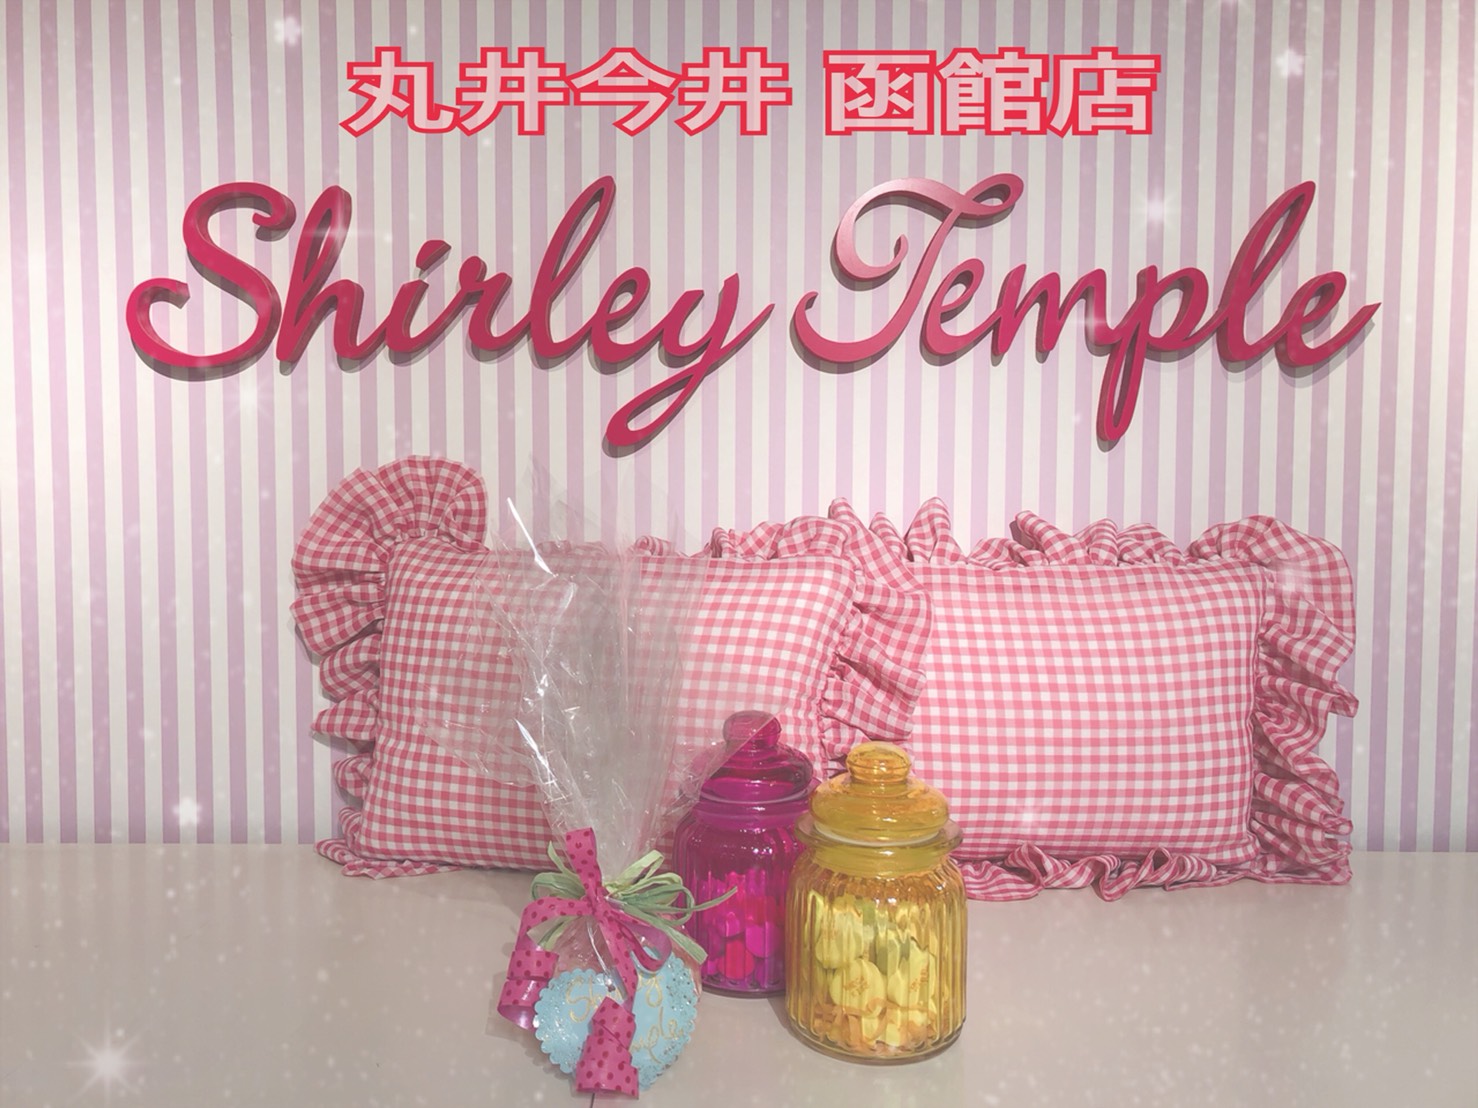 お買い得セールのご案内 丸井今井函館店 Blog Shirley Temple